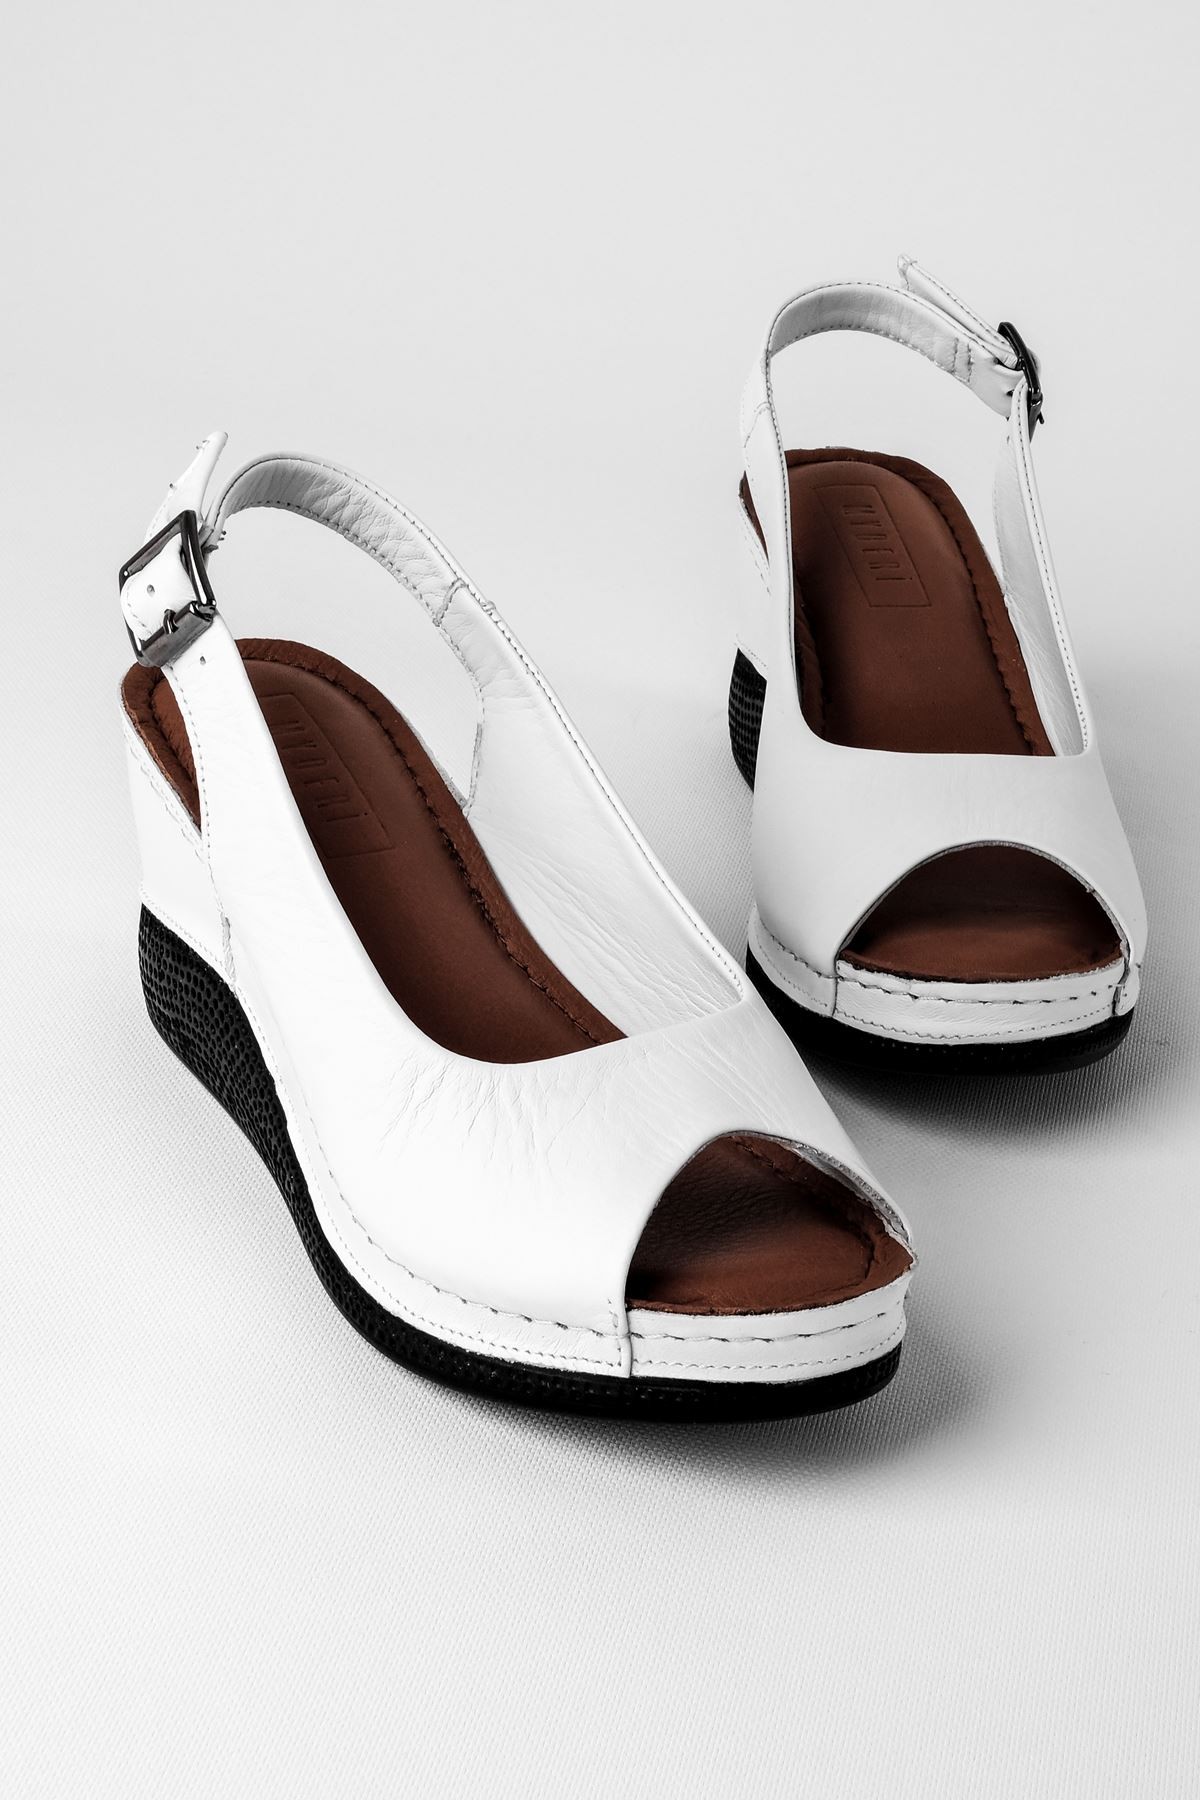 Merib Kadın Hakiki Deri Dolgulu Topuklu Günlük Ayakkabı - Beyaz